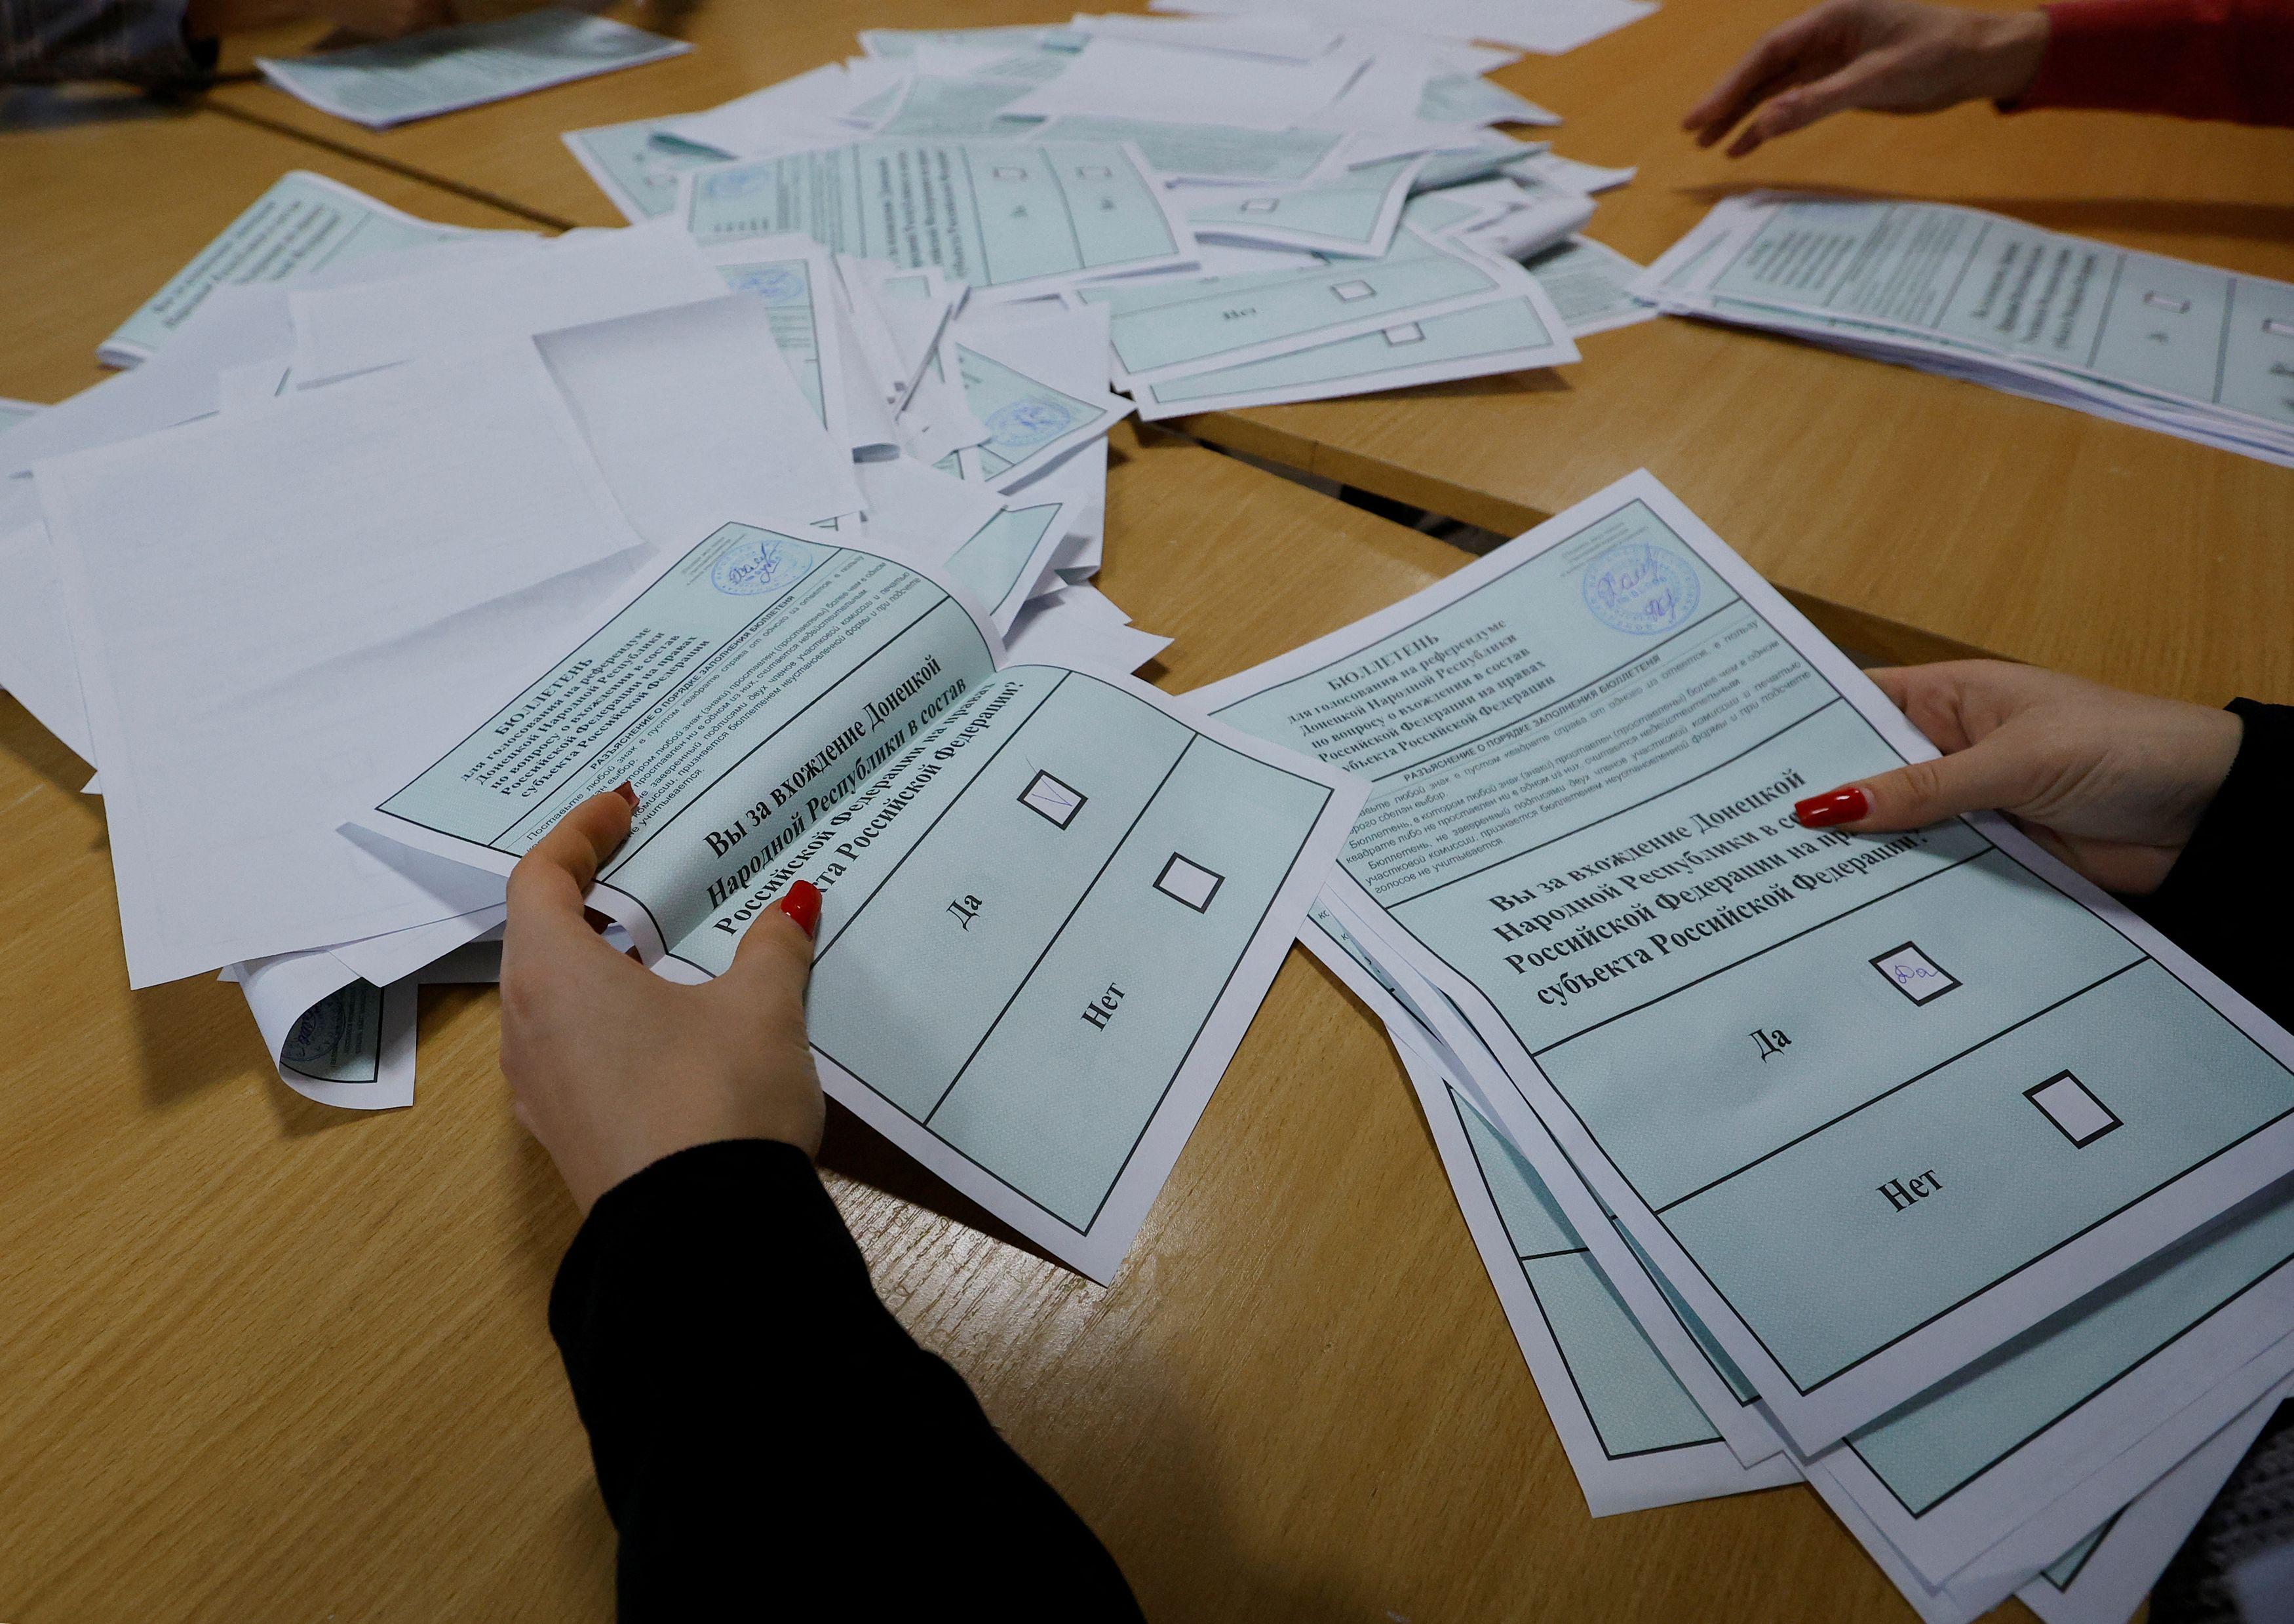 Regiões separatistas na Ucrânia aceleram referendo sobre adesão à